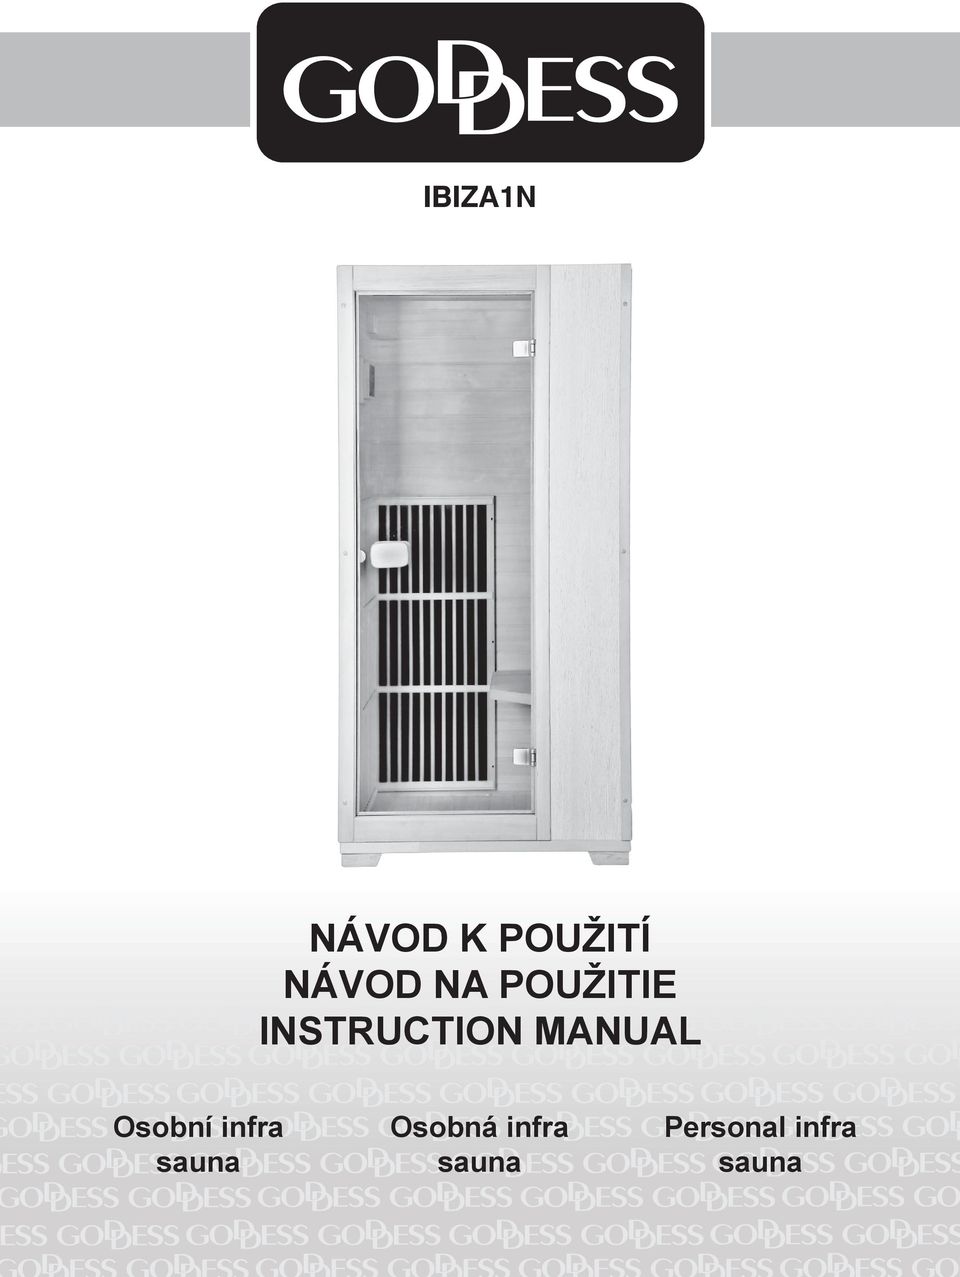 MANUAL Osobní infra sauna